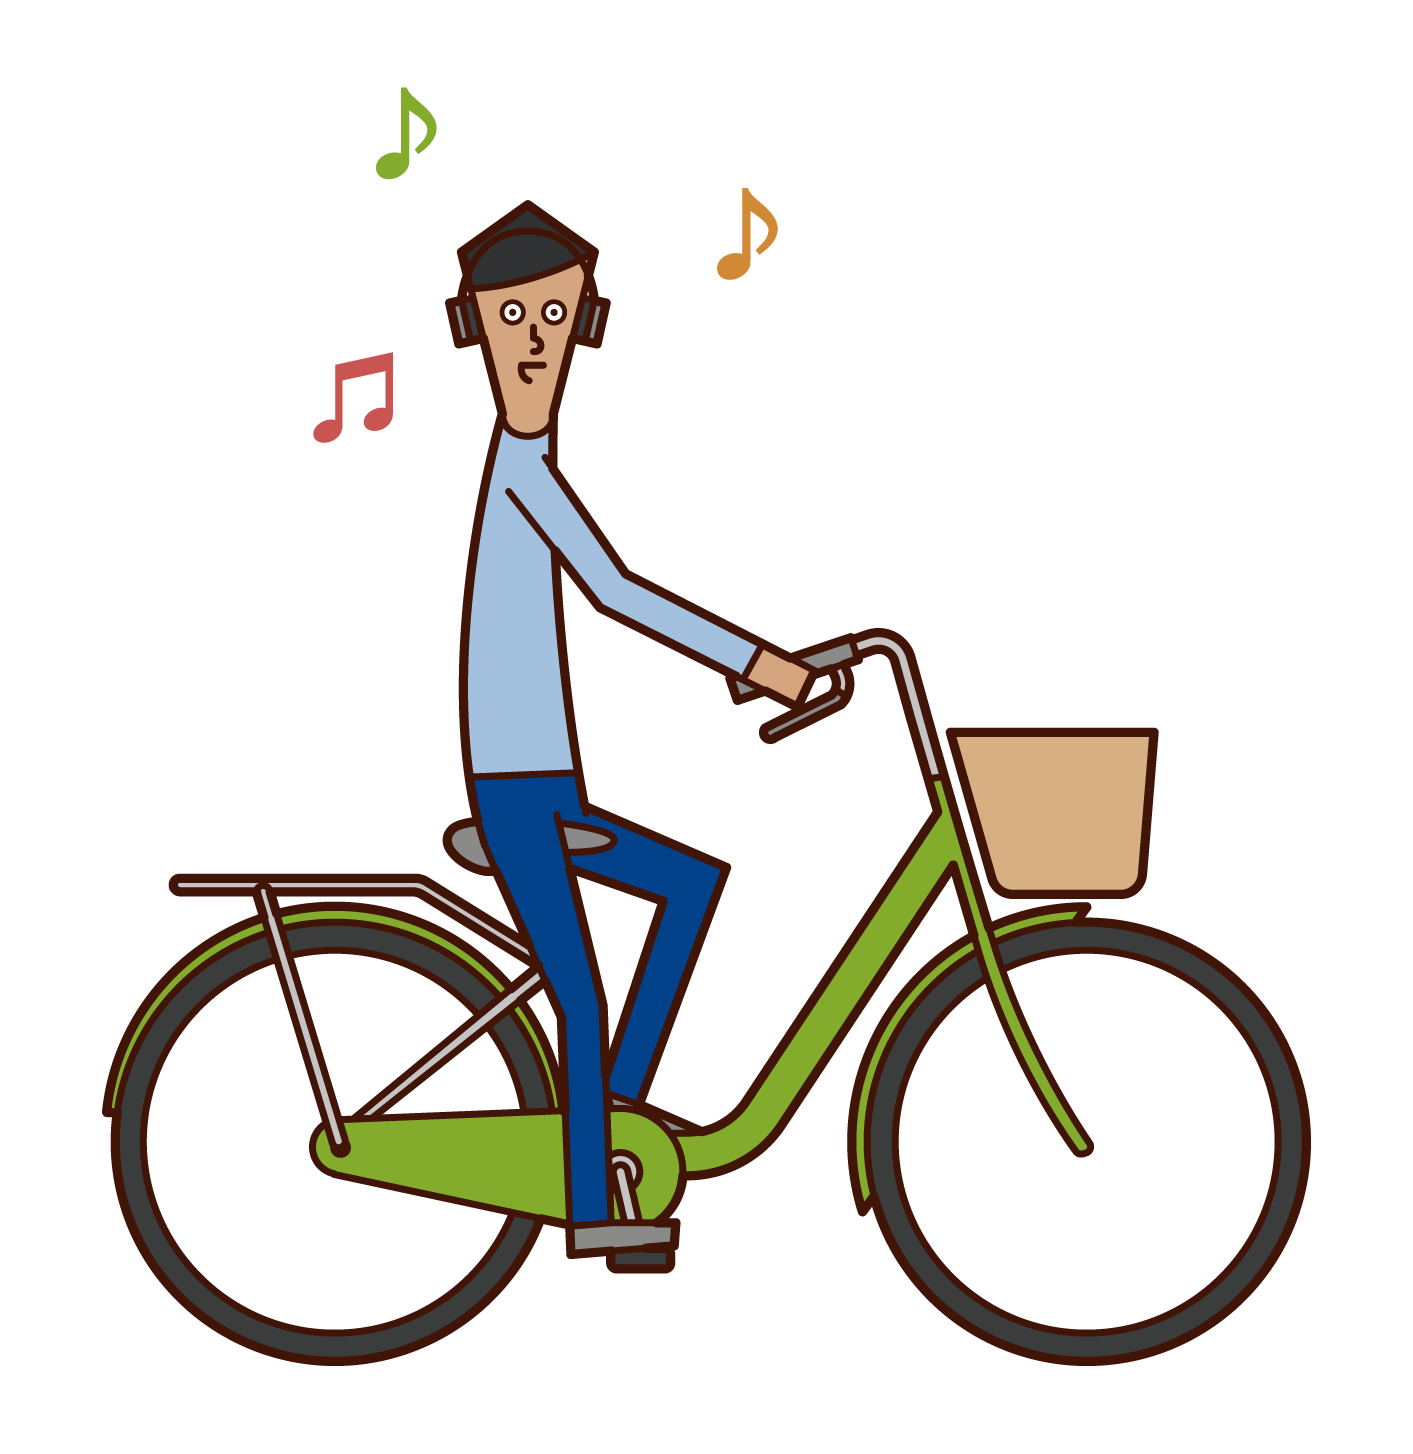 헤드폰으로 음악을 들을 때 자전거를 운전하는 사람(남성)의 일러스트